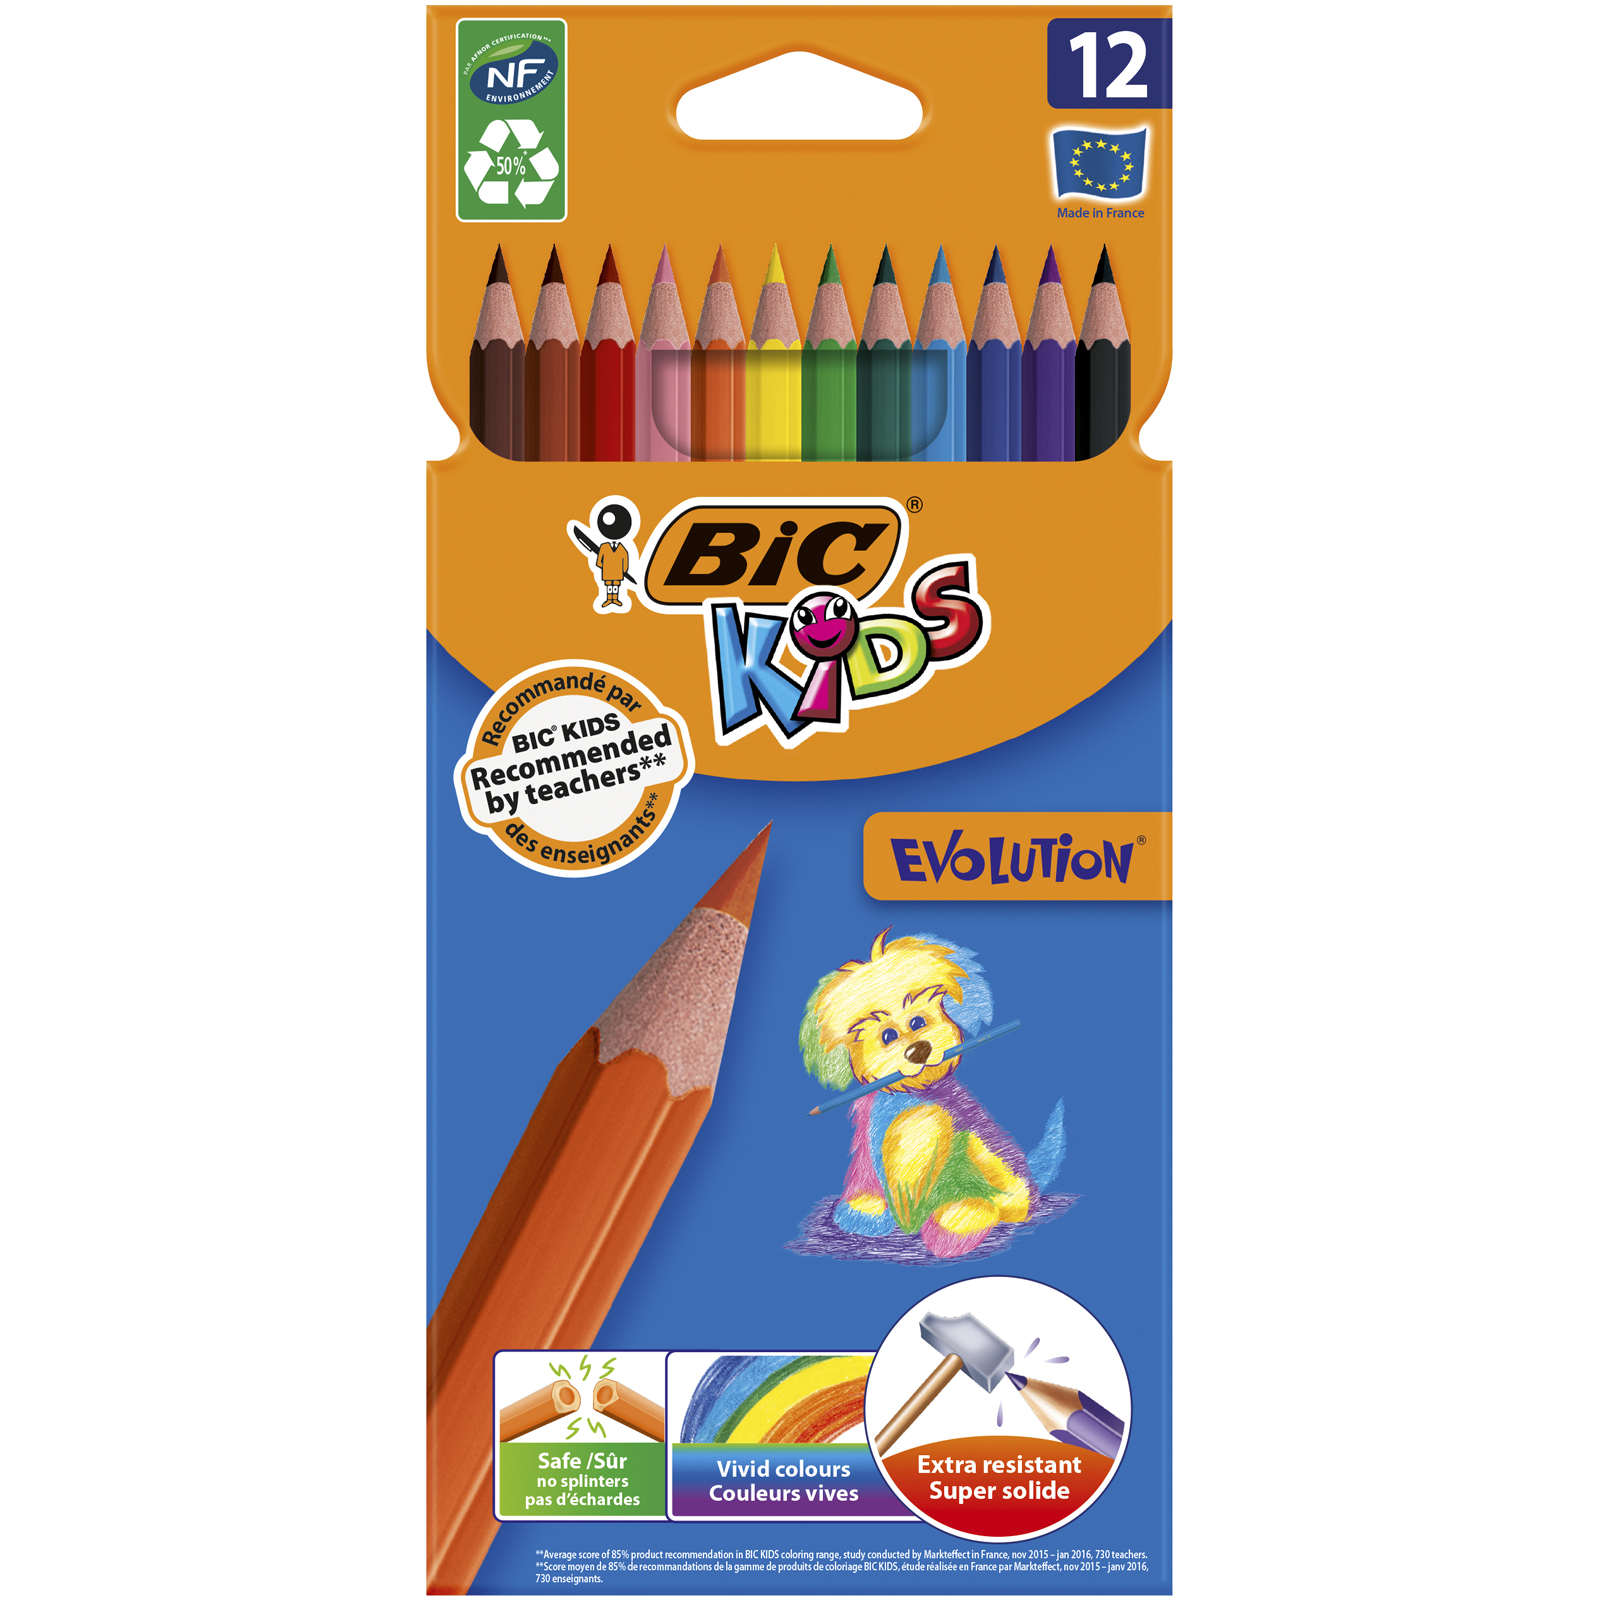 WONDAY Pochette de 12 crayons de couleur assortis. Corps hexagonale